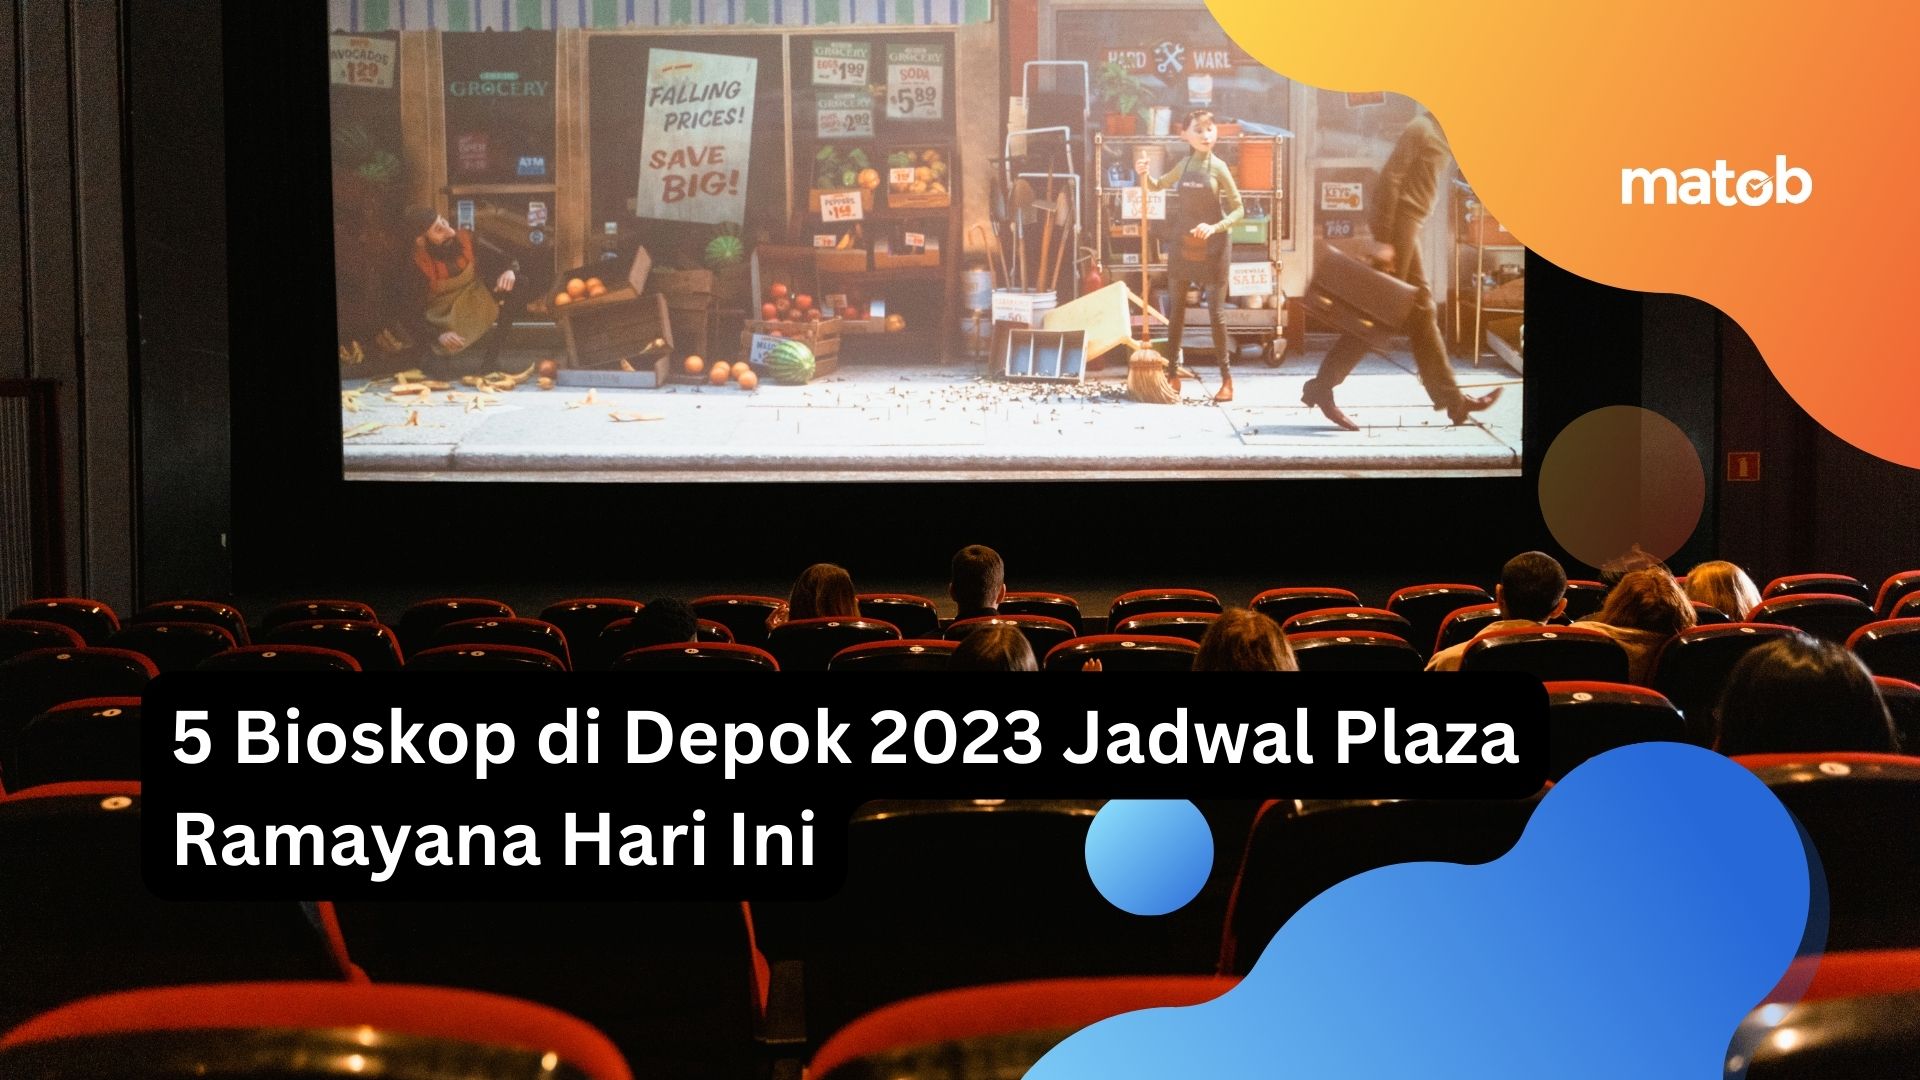 5 Bioskop di Depok 2023 Jadwal Plaza Ramayana Hari Ini